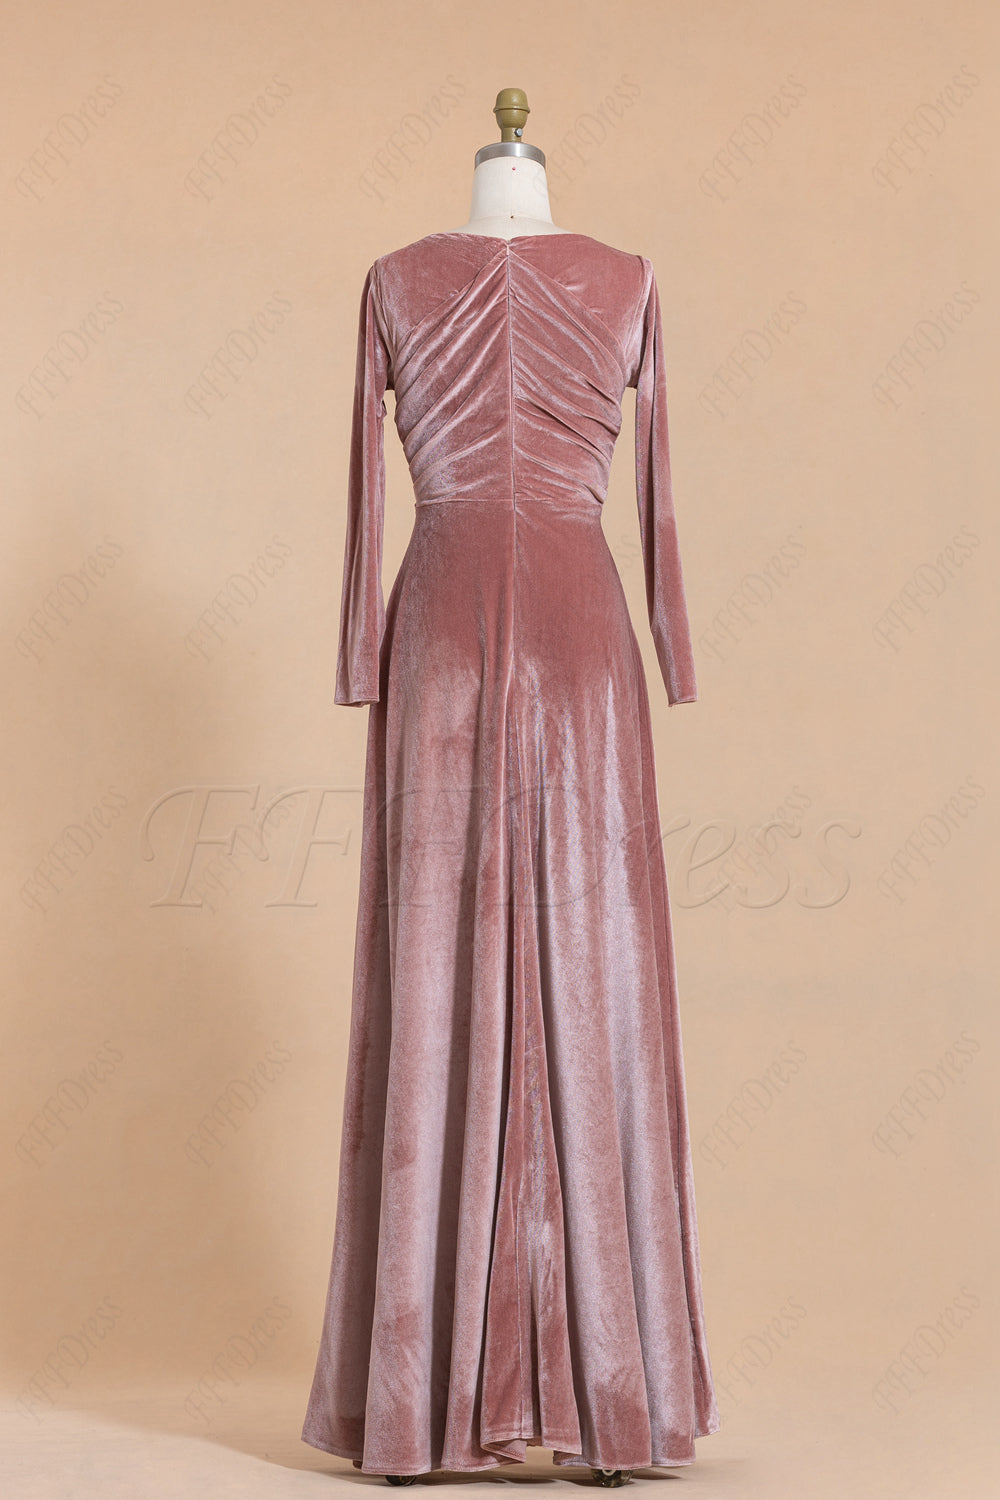 Modest Cinnamon Rose Velvet Bridesmaid Dresses for Fall Winter Weddings